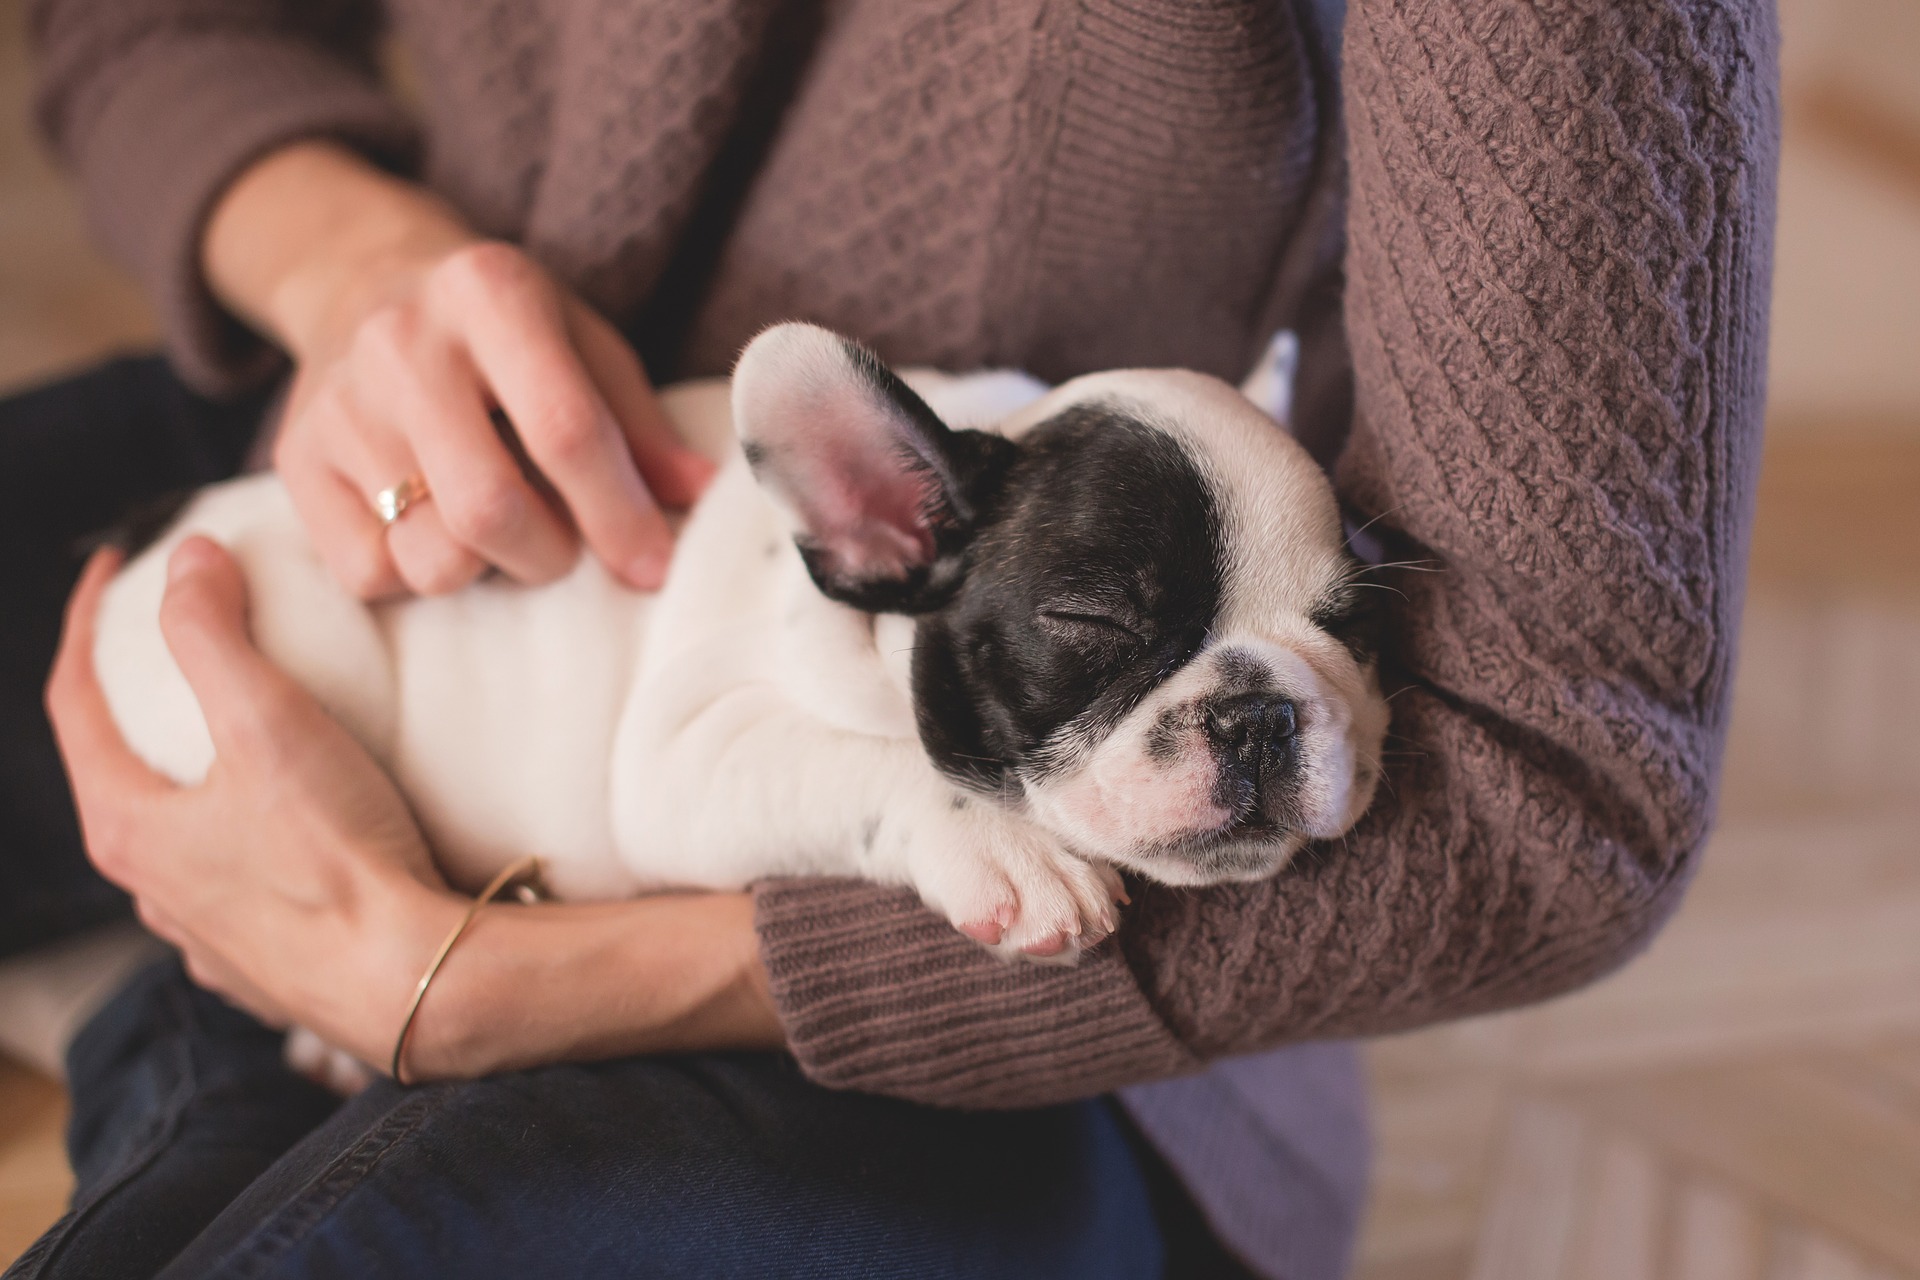 První dny psa v novém bytě s novými lidmi jsou spojeny se spoustou stresu, měli byste si při výchově psa zachovat dvojnásobnou dávku trpělivosti.